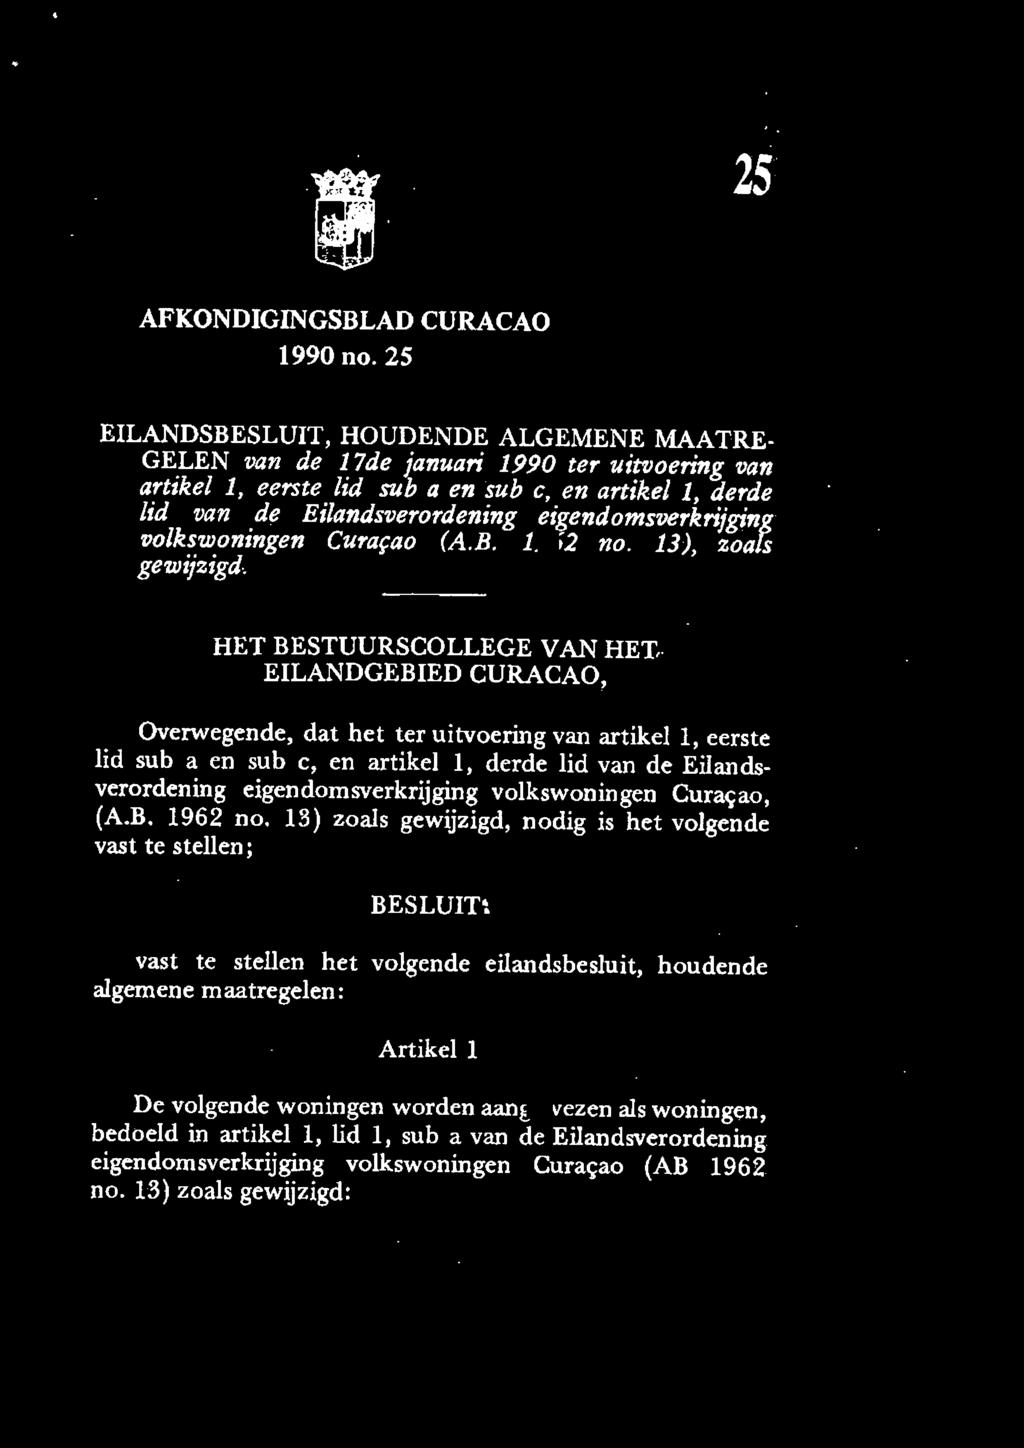 1, derde lid van de Eilandsverordening eigendomsverkrijging volkswoningen Curafao (A.B. 1962 no. 13), zoals gewijzigd. HET BESTUURSCOLLEGE VAN HET,.